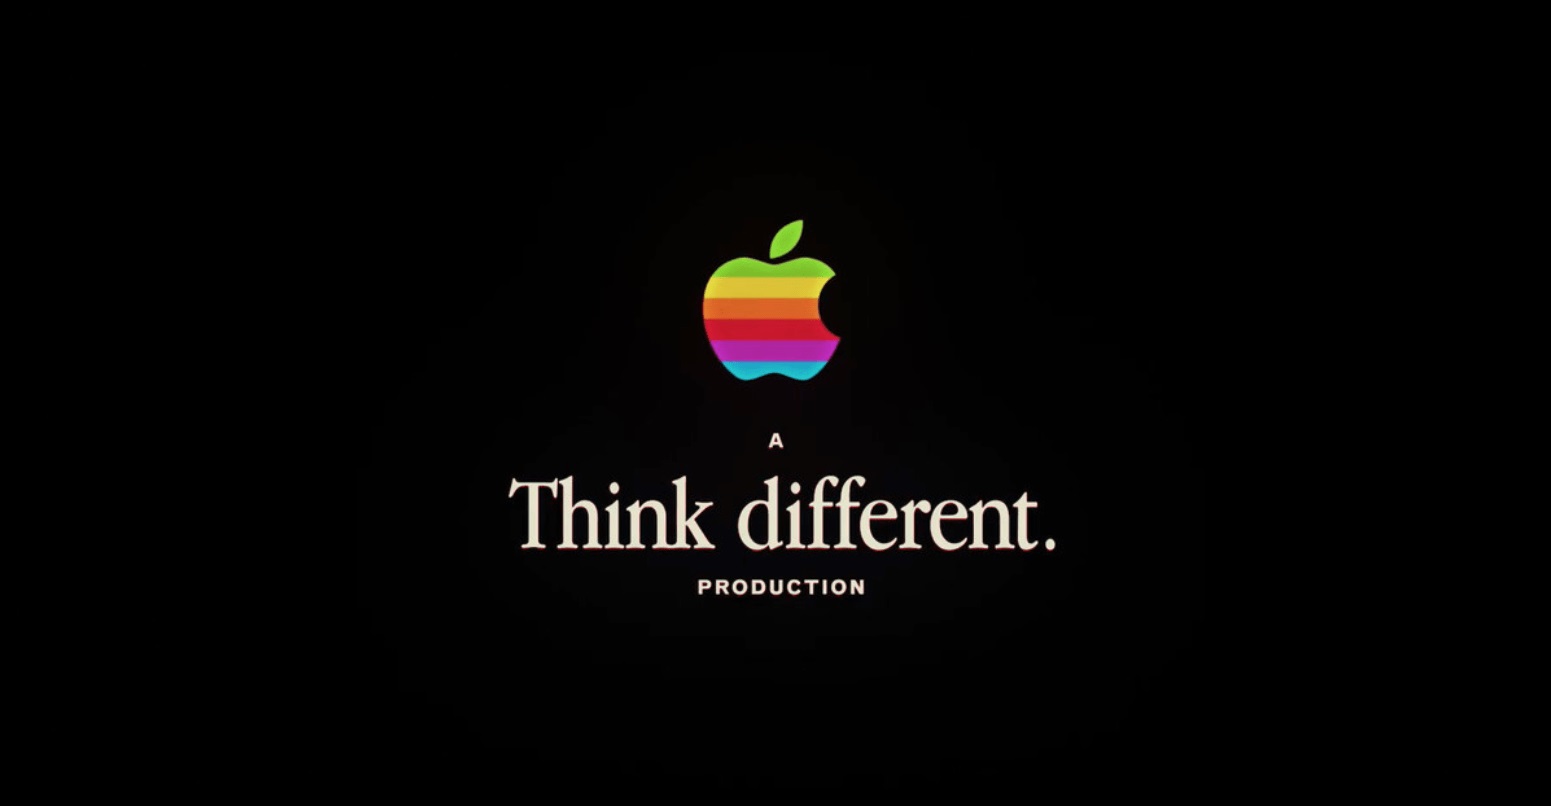 Apple rescató su viejo logo y pensó diferente / Foto: Apple